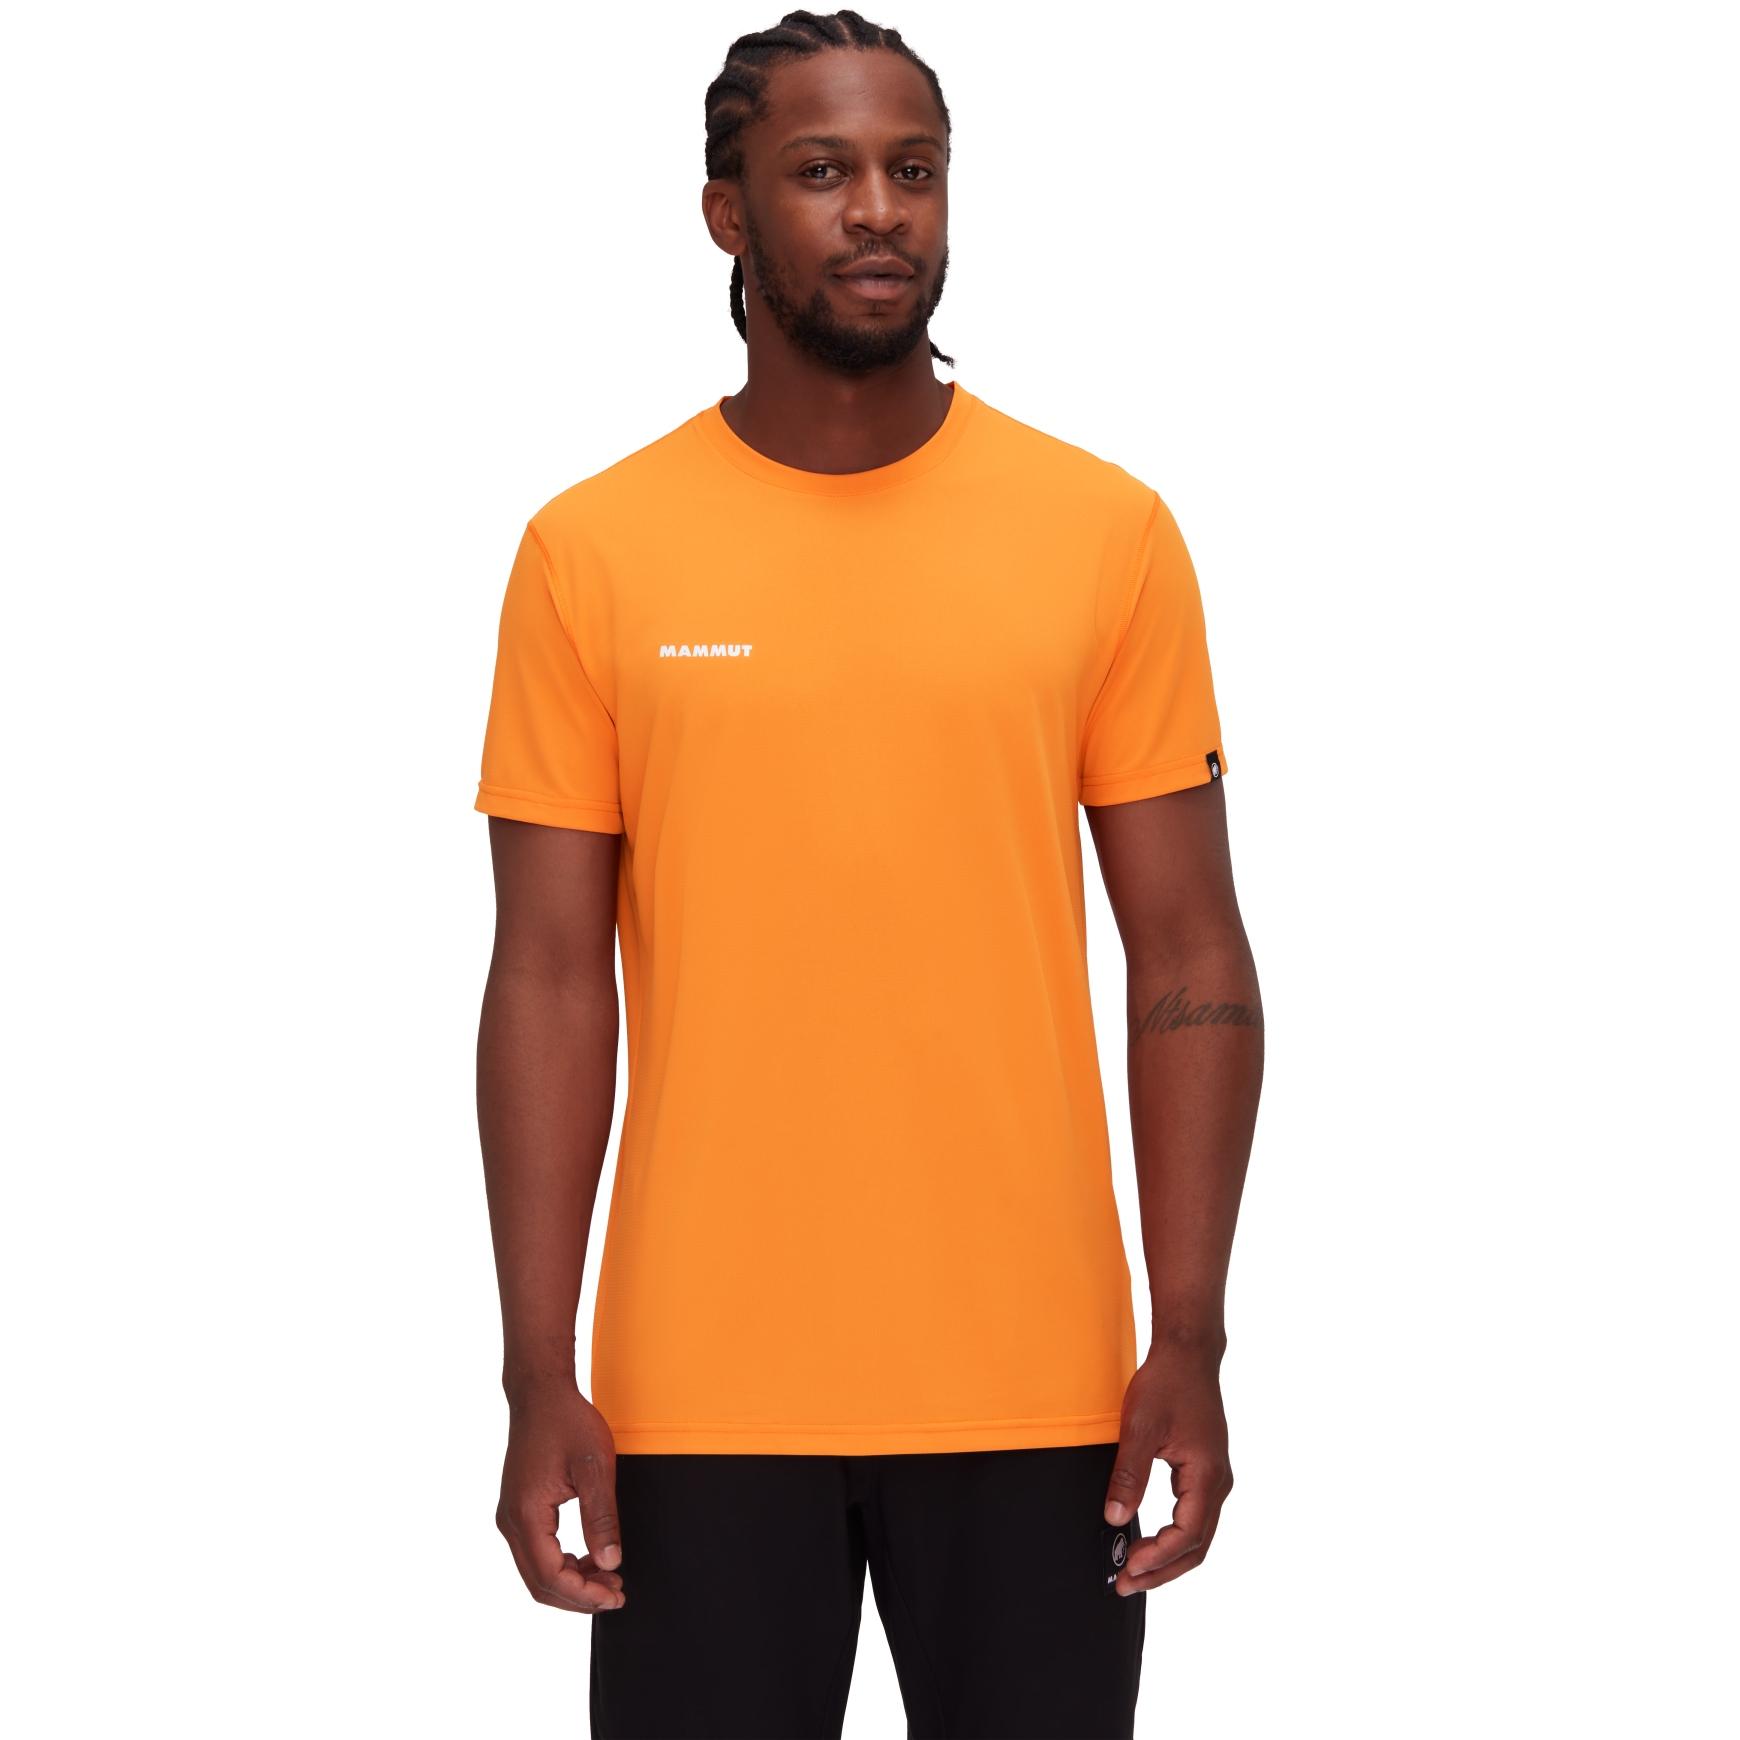 Productfoto van Mammut Massone Sport T-Shirt Heren - dark tangerine